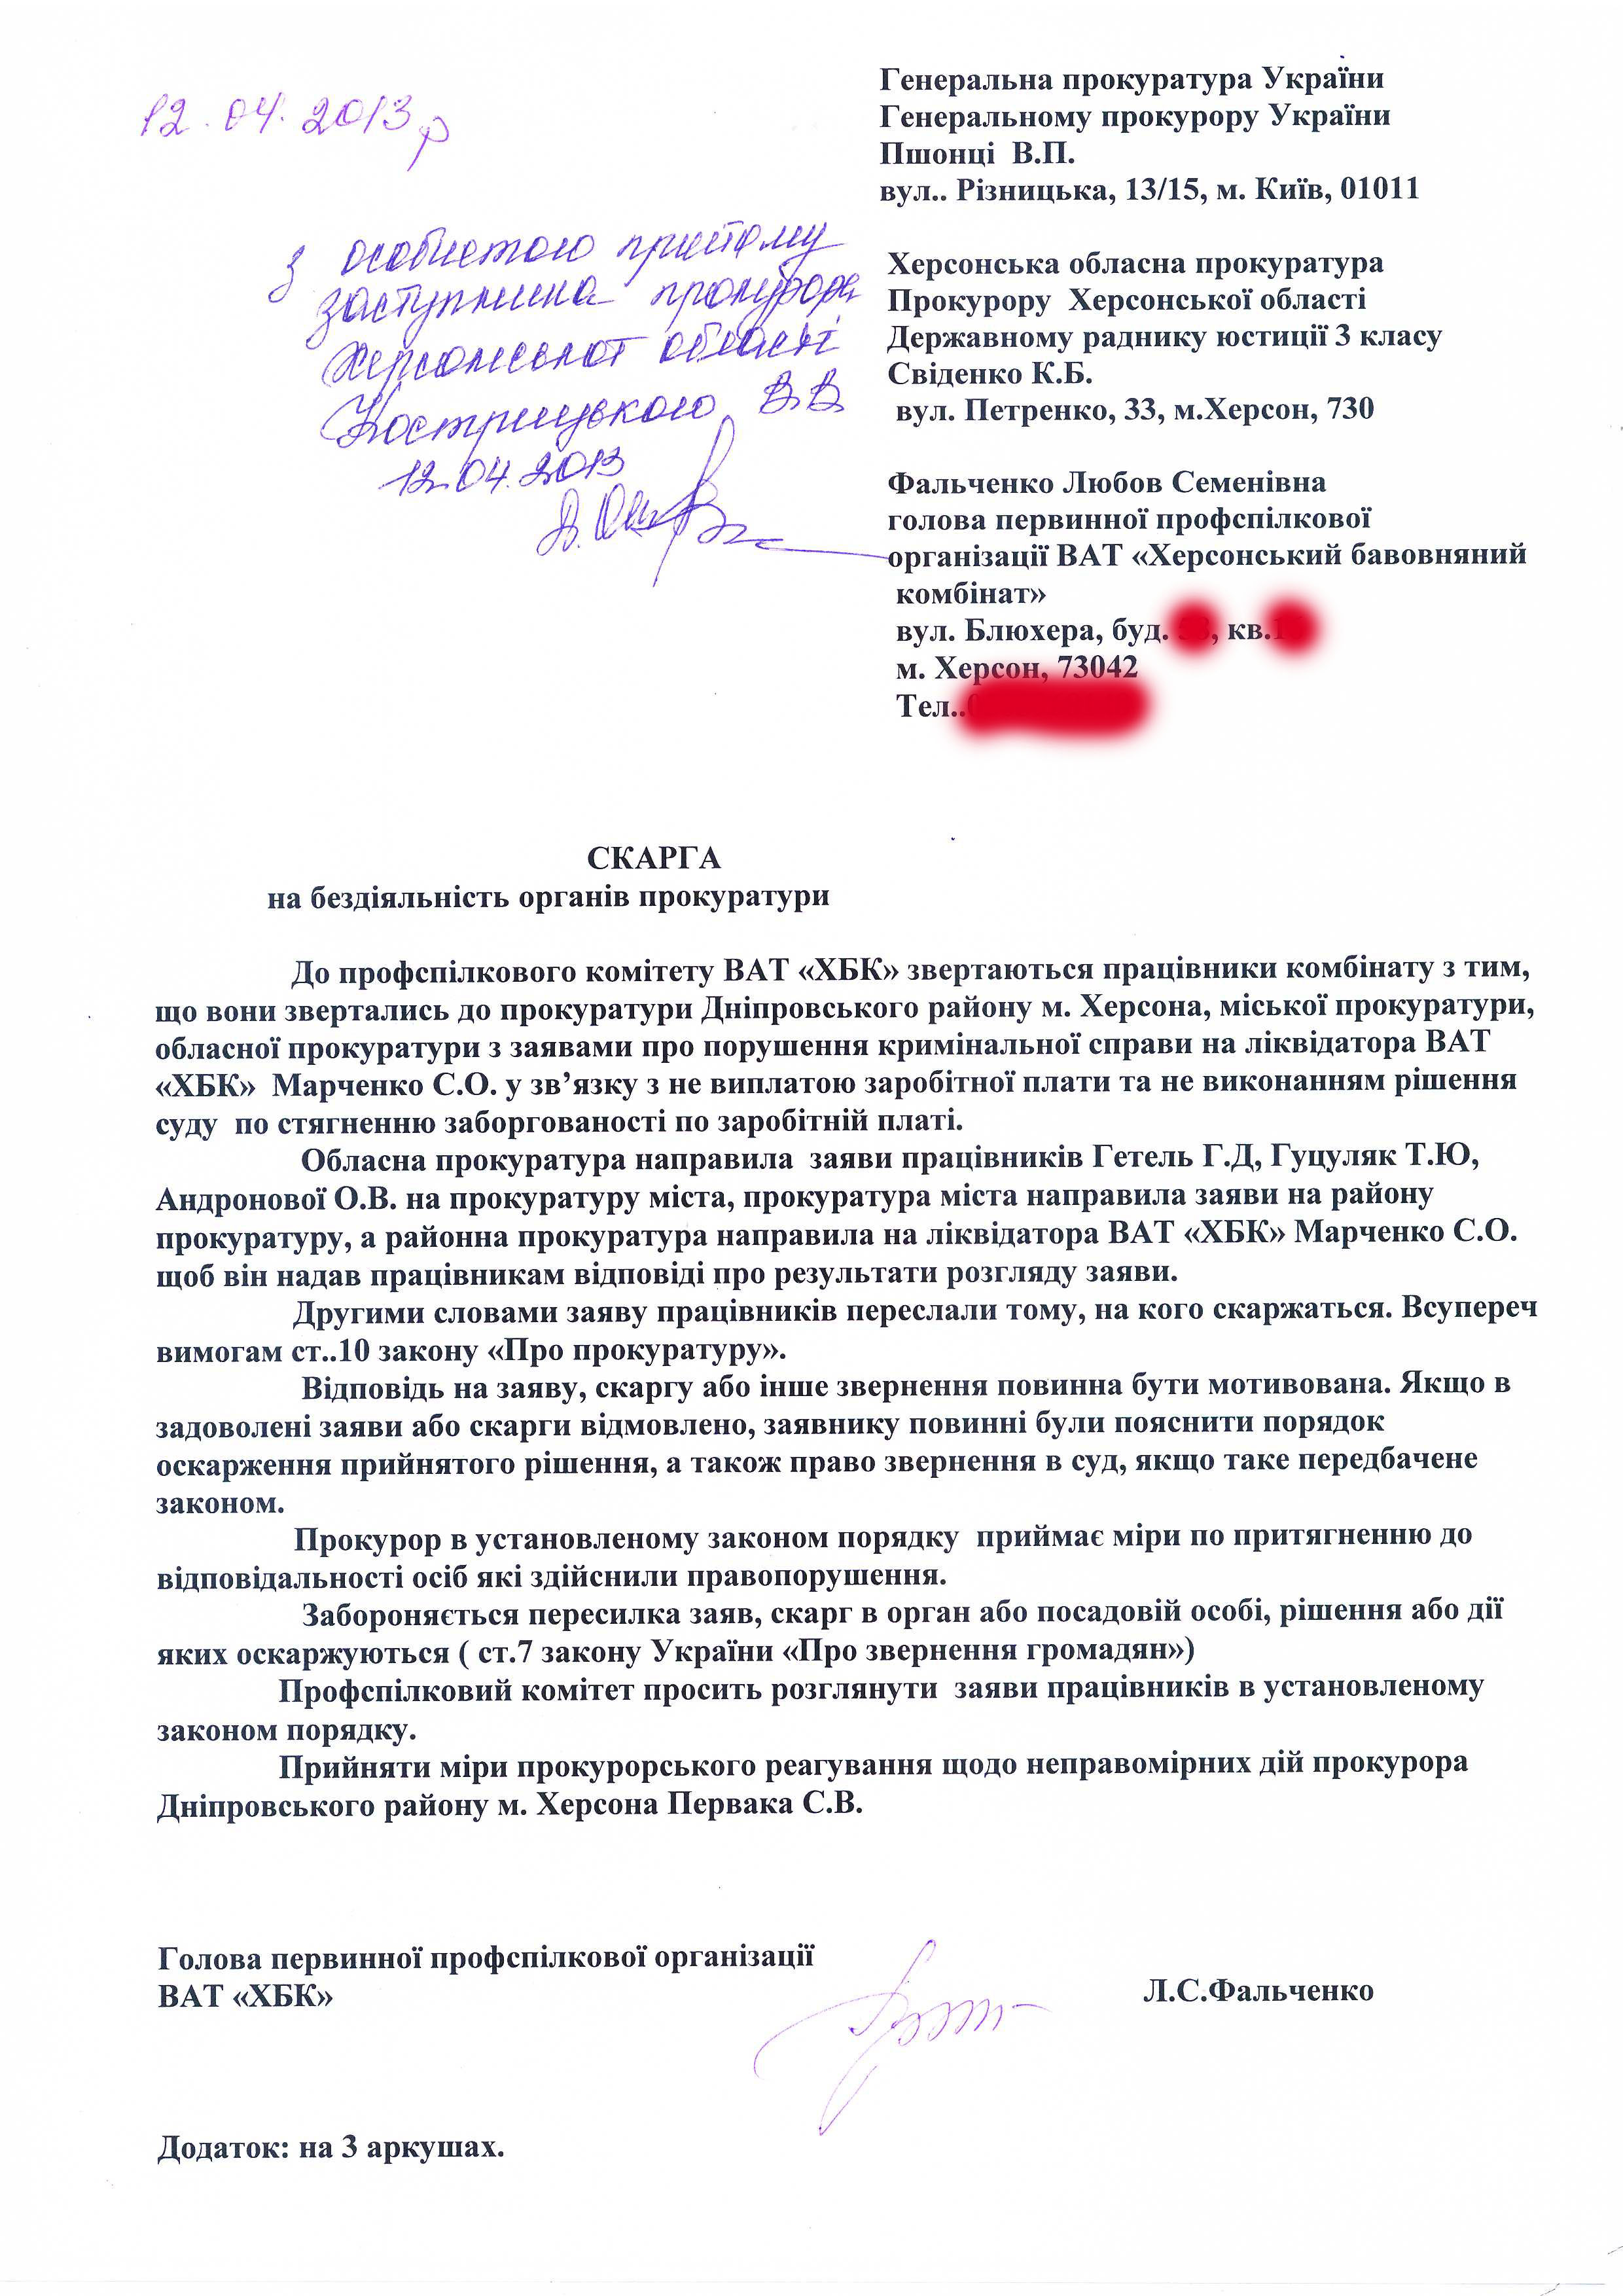 Заявление Генерального Прокурора Украины